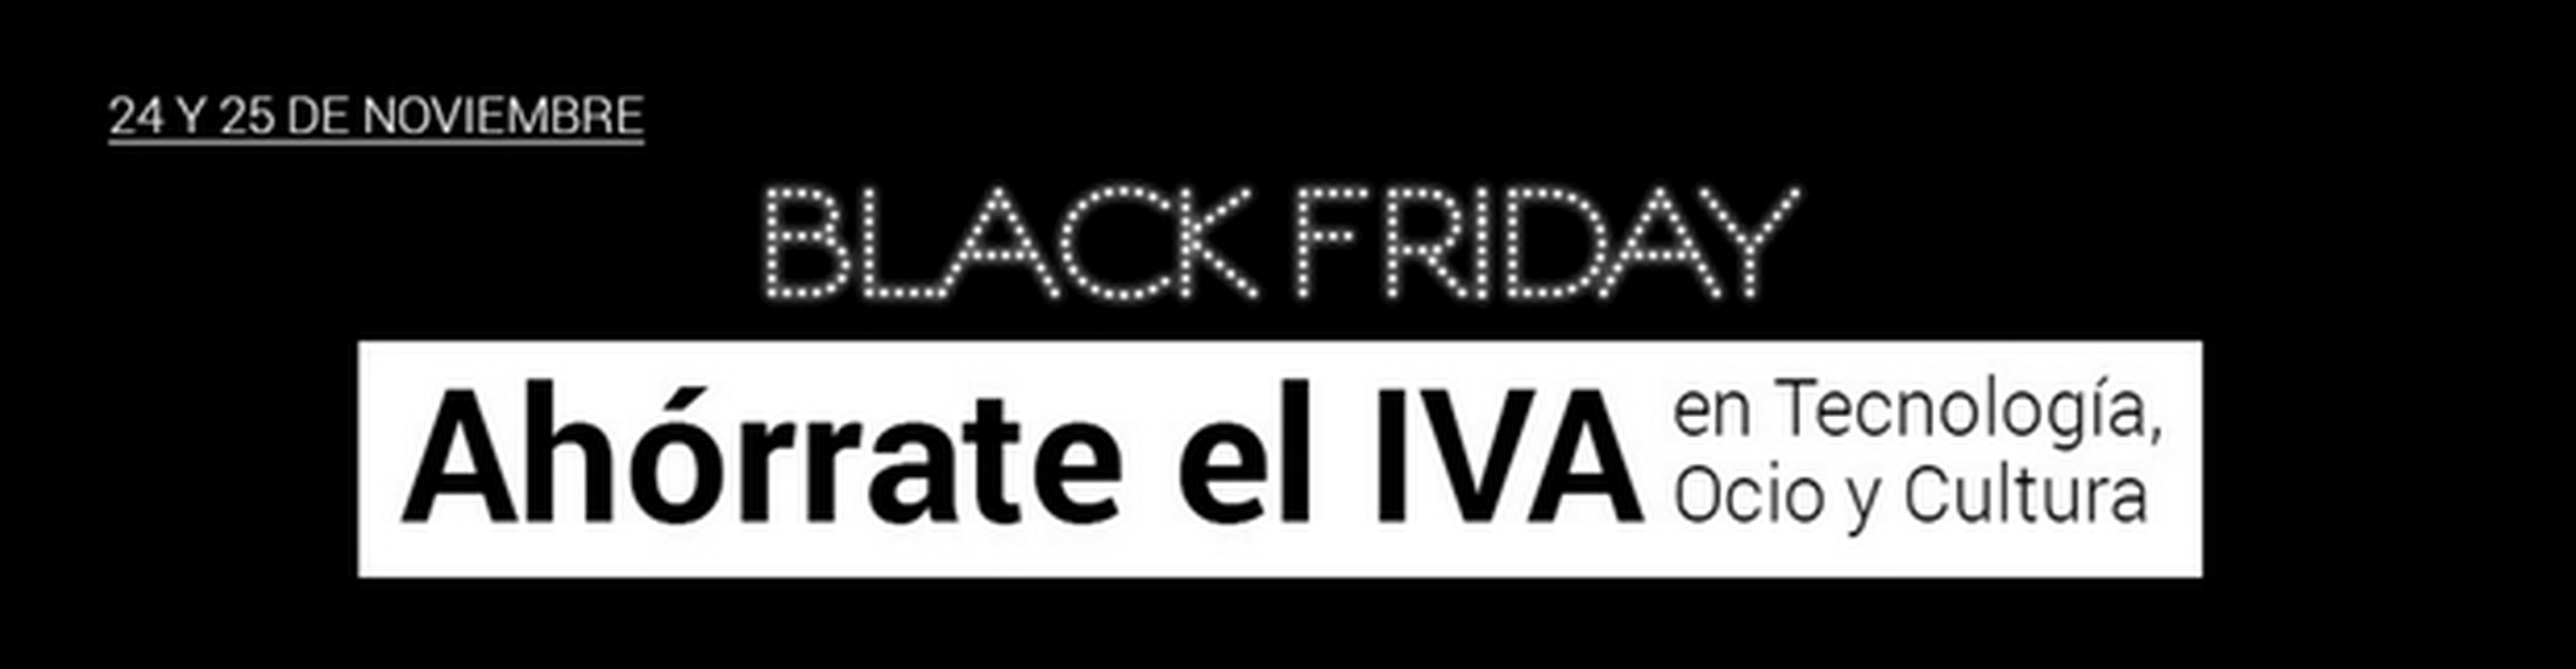 Black Friday: mejores ofertas para comprar electrodomésticos